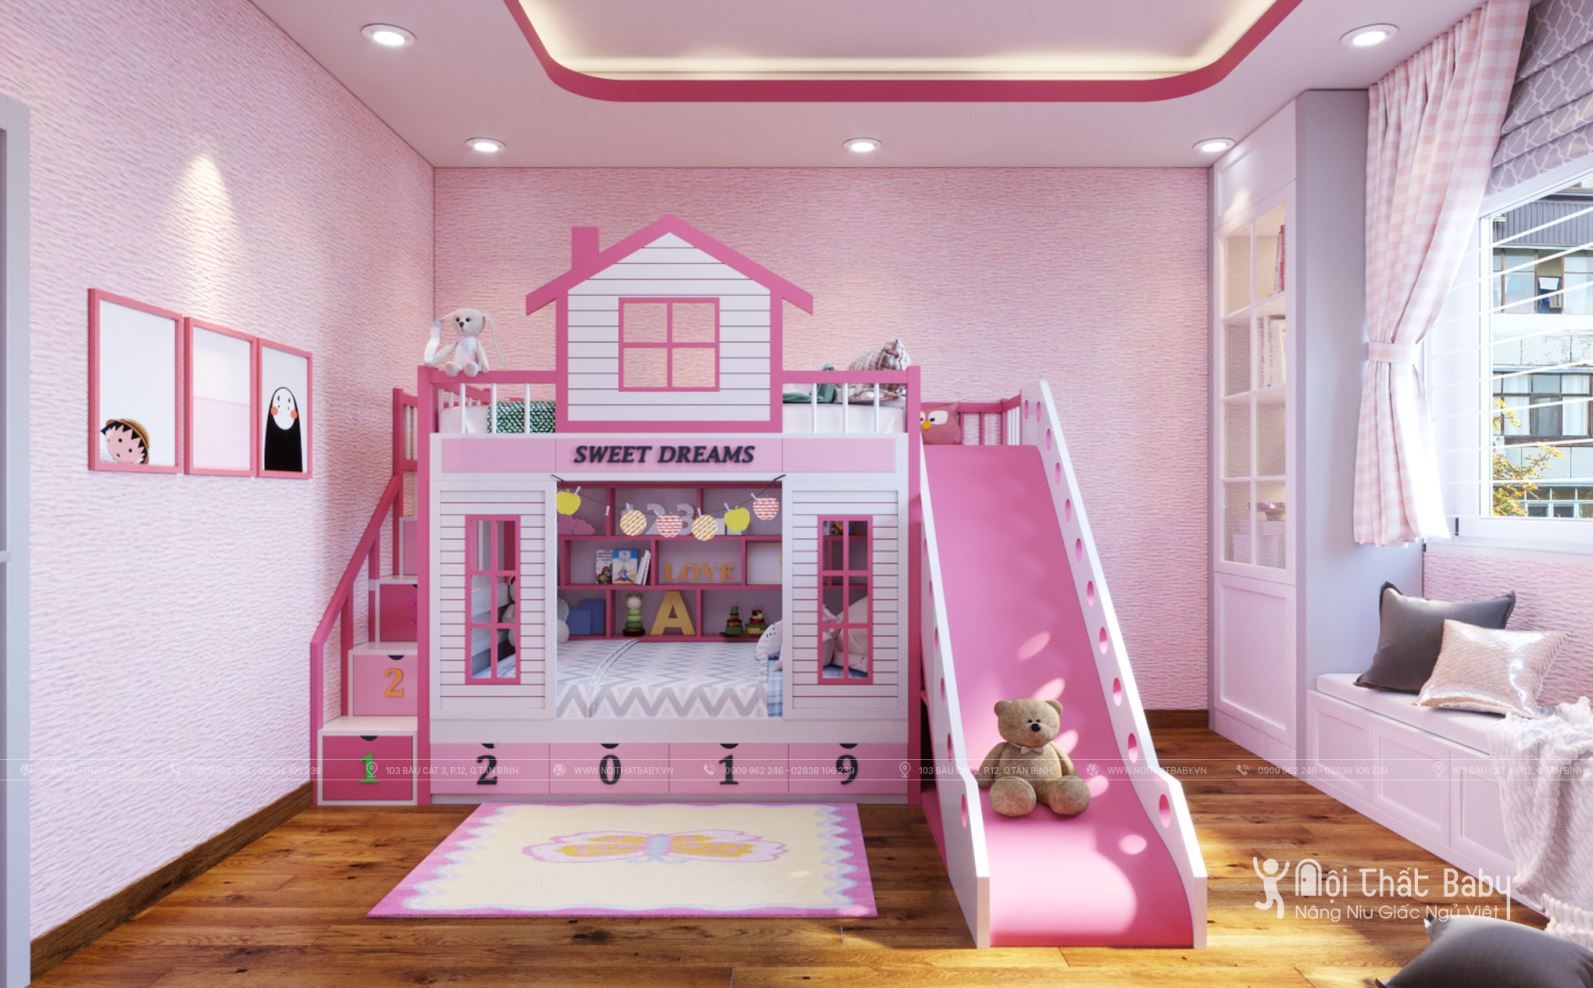 Giường tầng đẹp cho bé gái: Giường tầng là sự lựa chọn hoàn hảo cho những gia đình có nhiều con trẻ. Nhưng bạn có biết giường tầng cũng có thể đẹp không kém một chiếc giường đơn giản? Hãy xem qua hình ảnh của chúng tôi về giường tầng đẹp cho bé gái, bạn sẽ thấy giường tầng còn có thể là một tác phẩm nghệ thuật trong không gian phòng ngủ của bé.